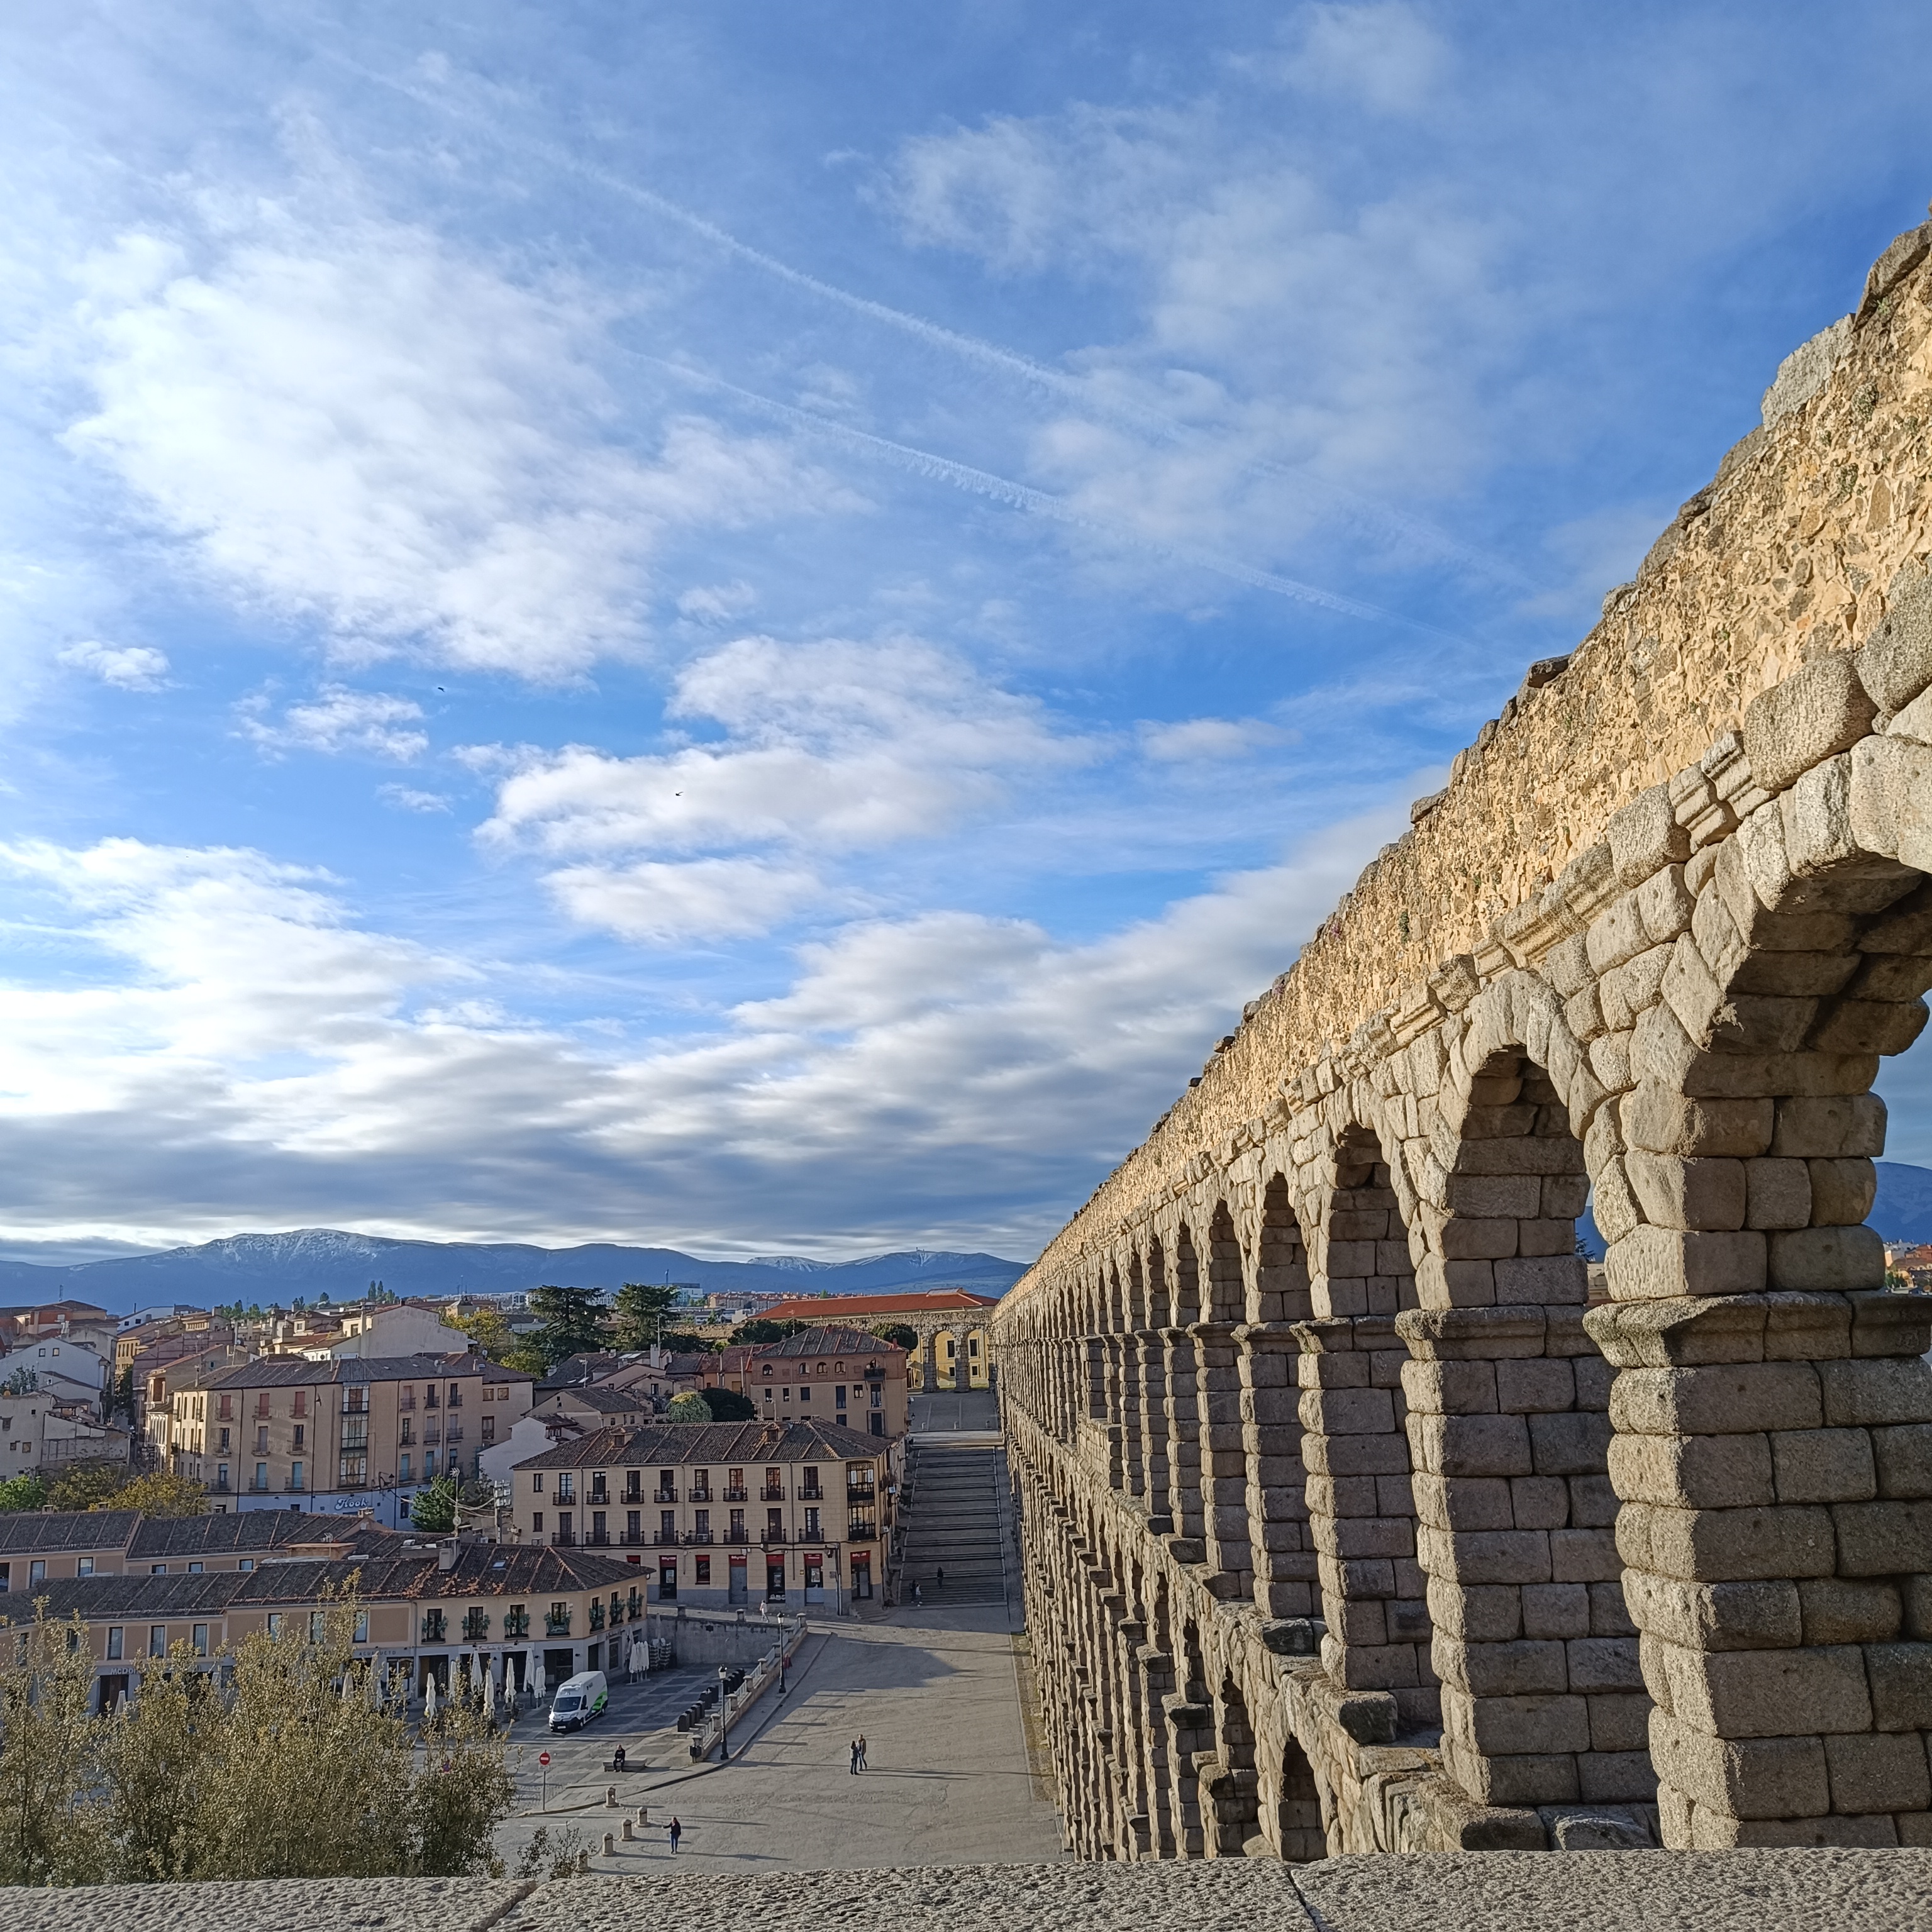 Vista desde arriba del acueducto romano de Segovia, España.
Vamos a descubrir que hacer en Segovia España.